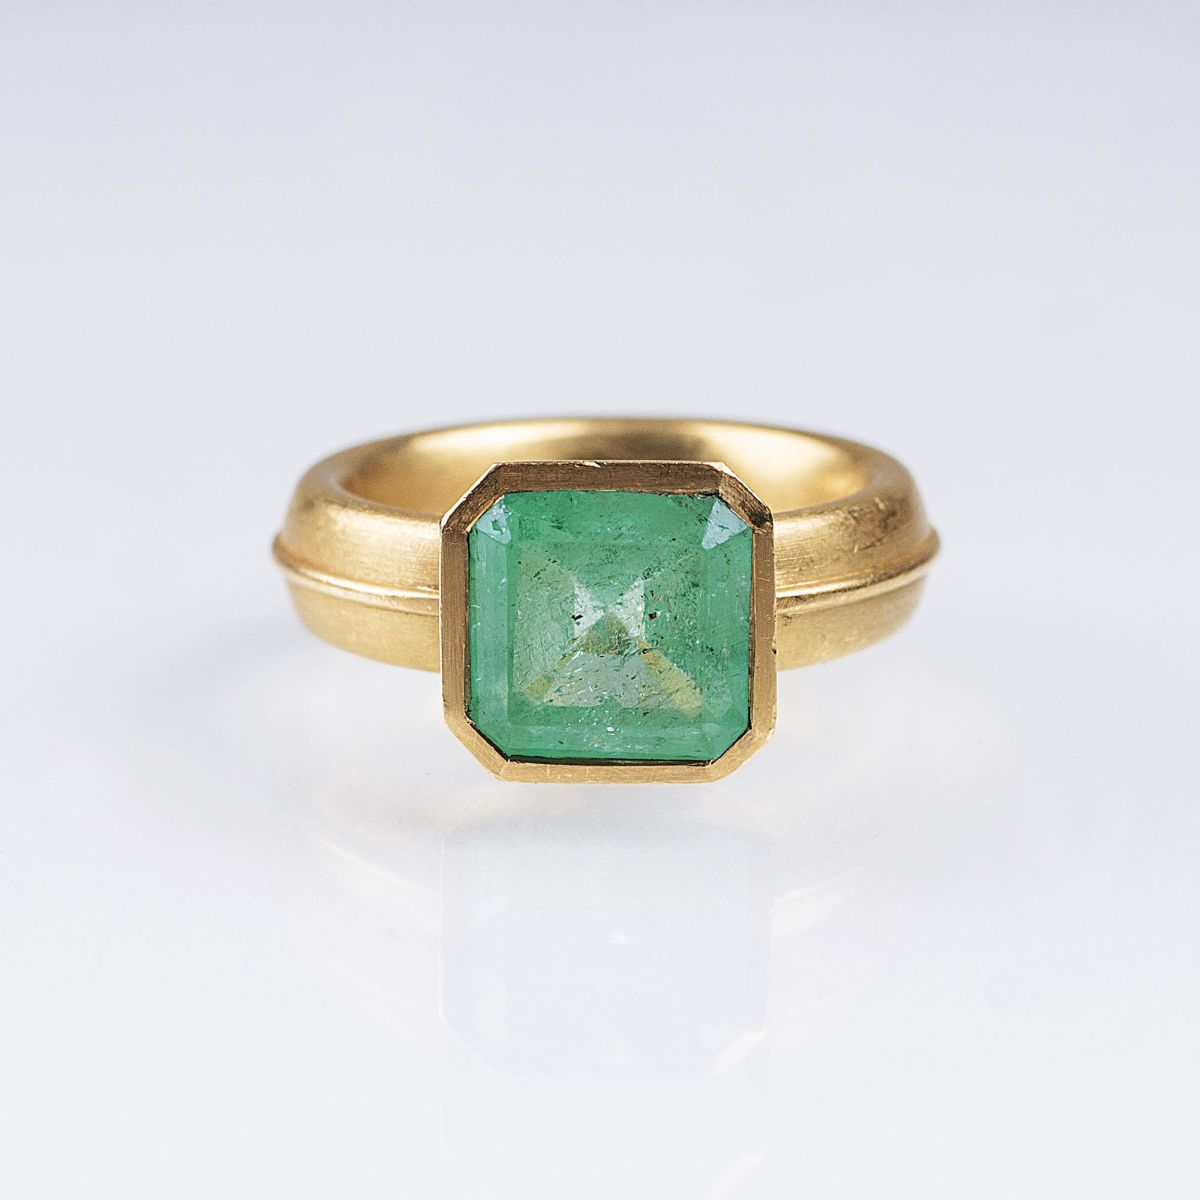 An Emerald Ring by Jeweller Panzerknacker